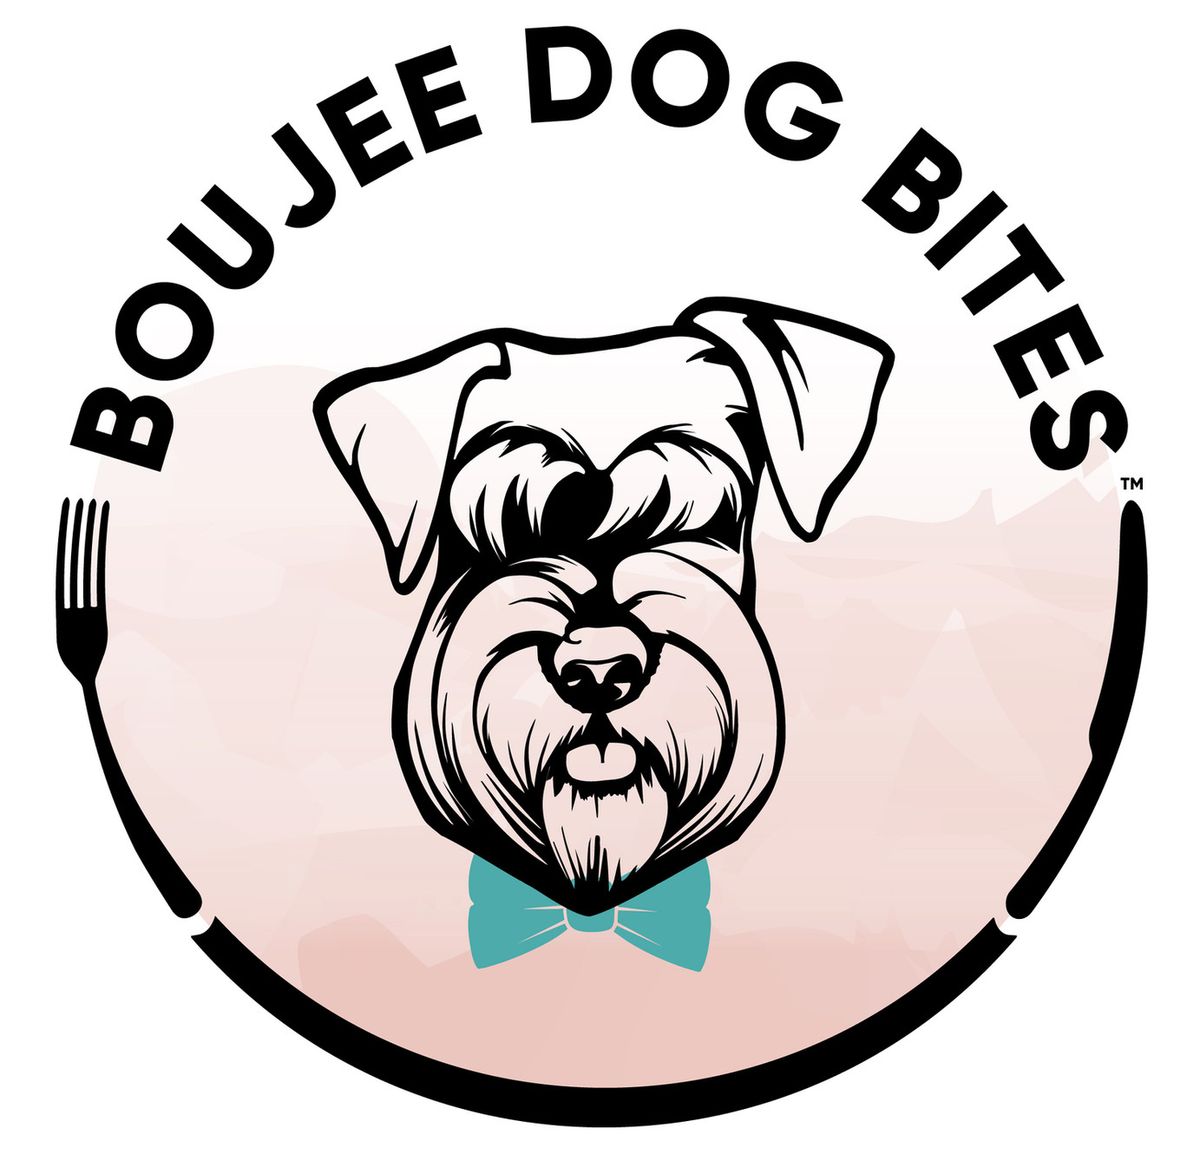 Boujee Dog Bites Take Home Meal! $10